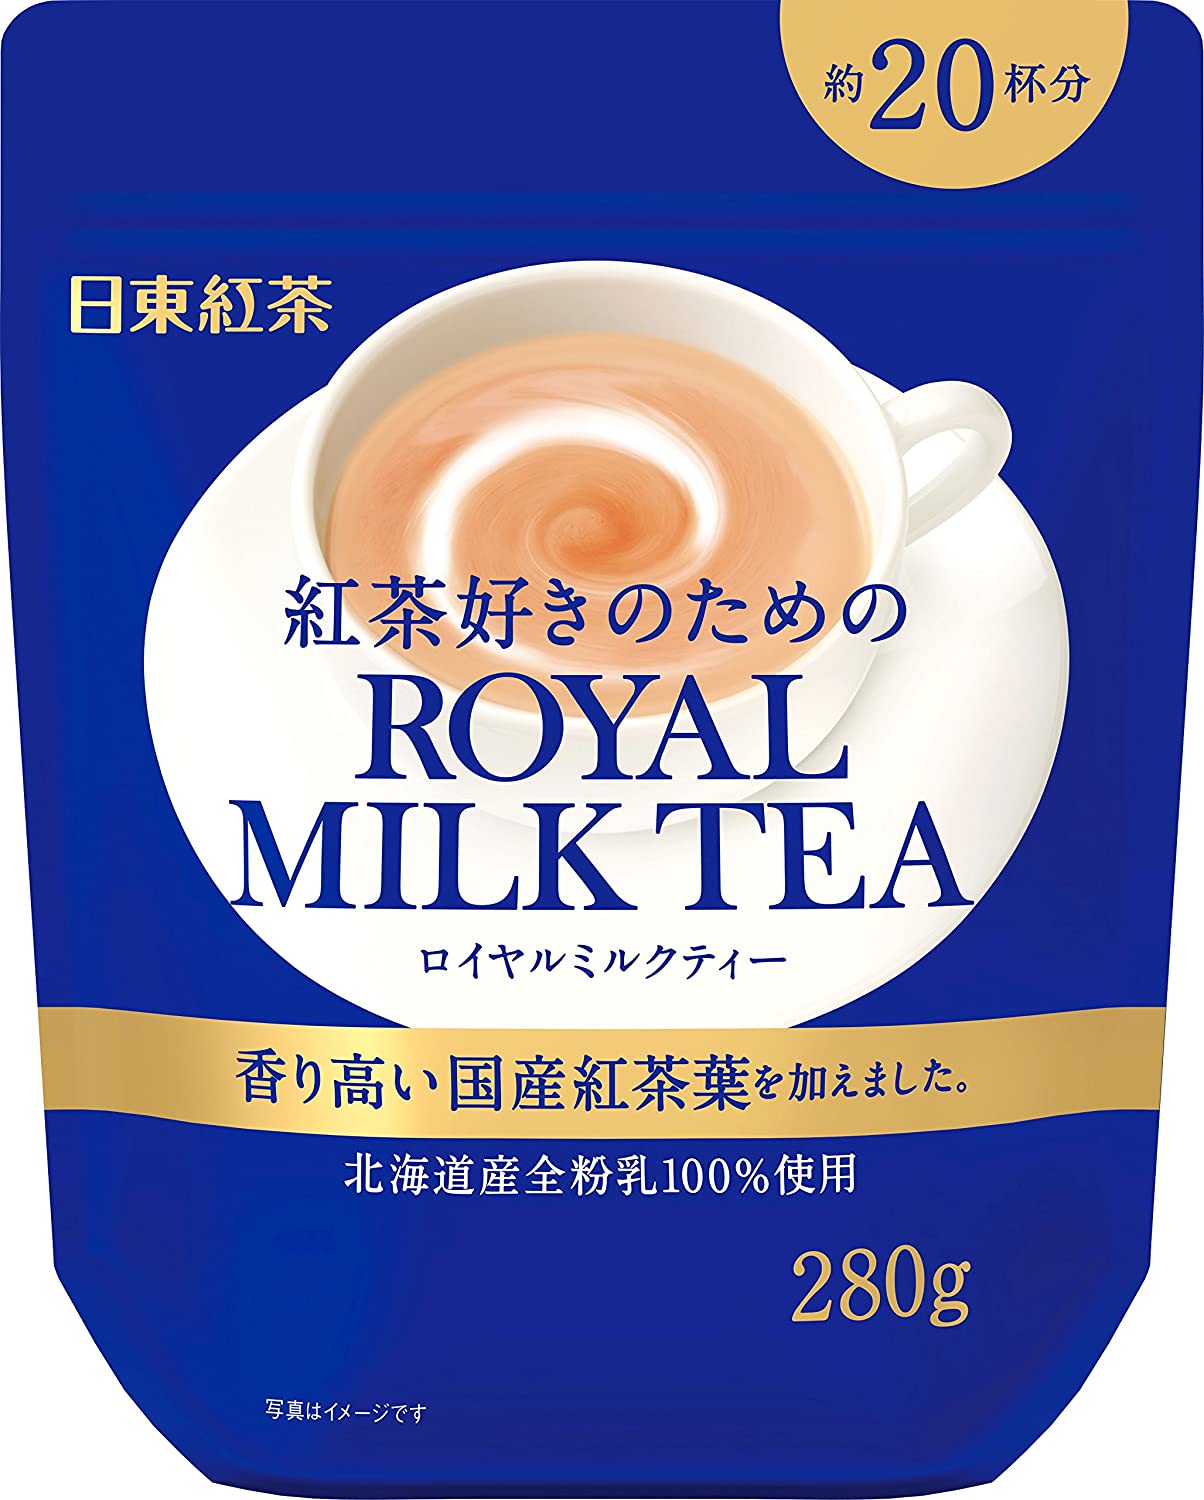 三井農林 日東紅茶 日東紅茶 皇家奶茶 280g